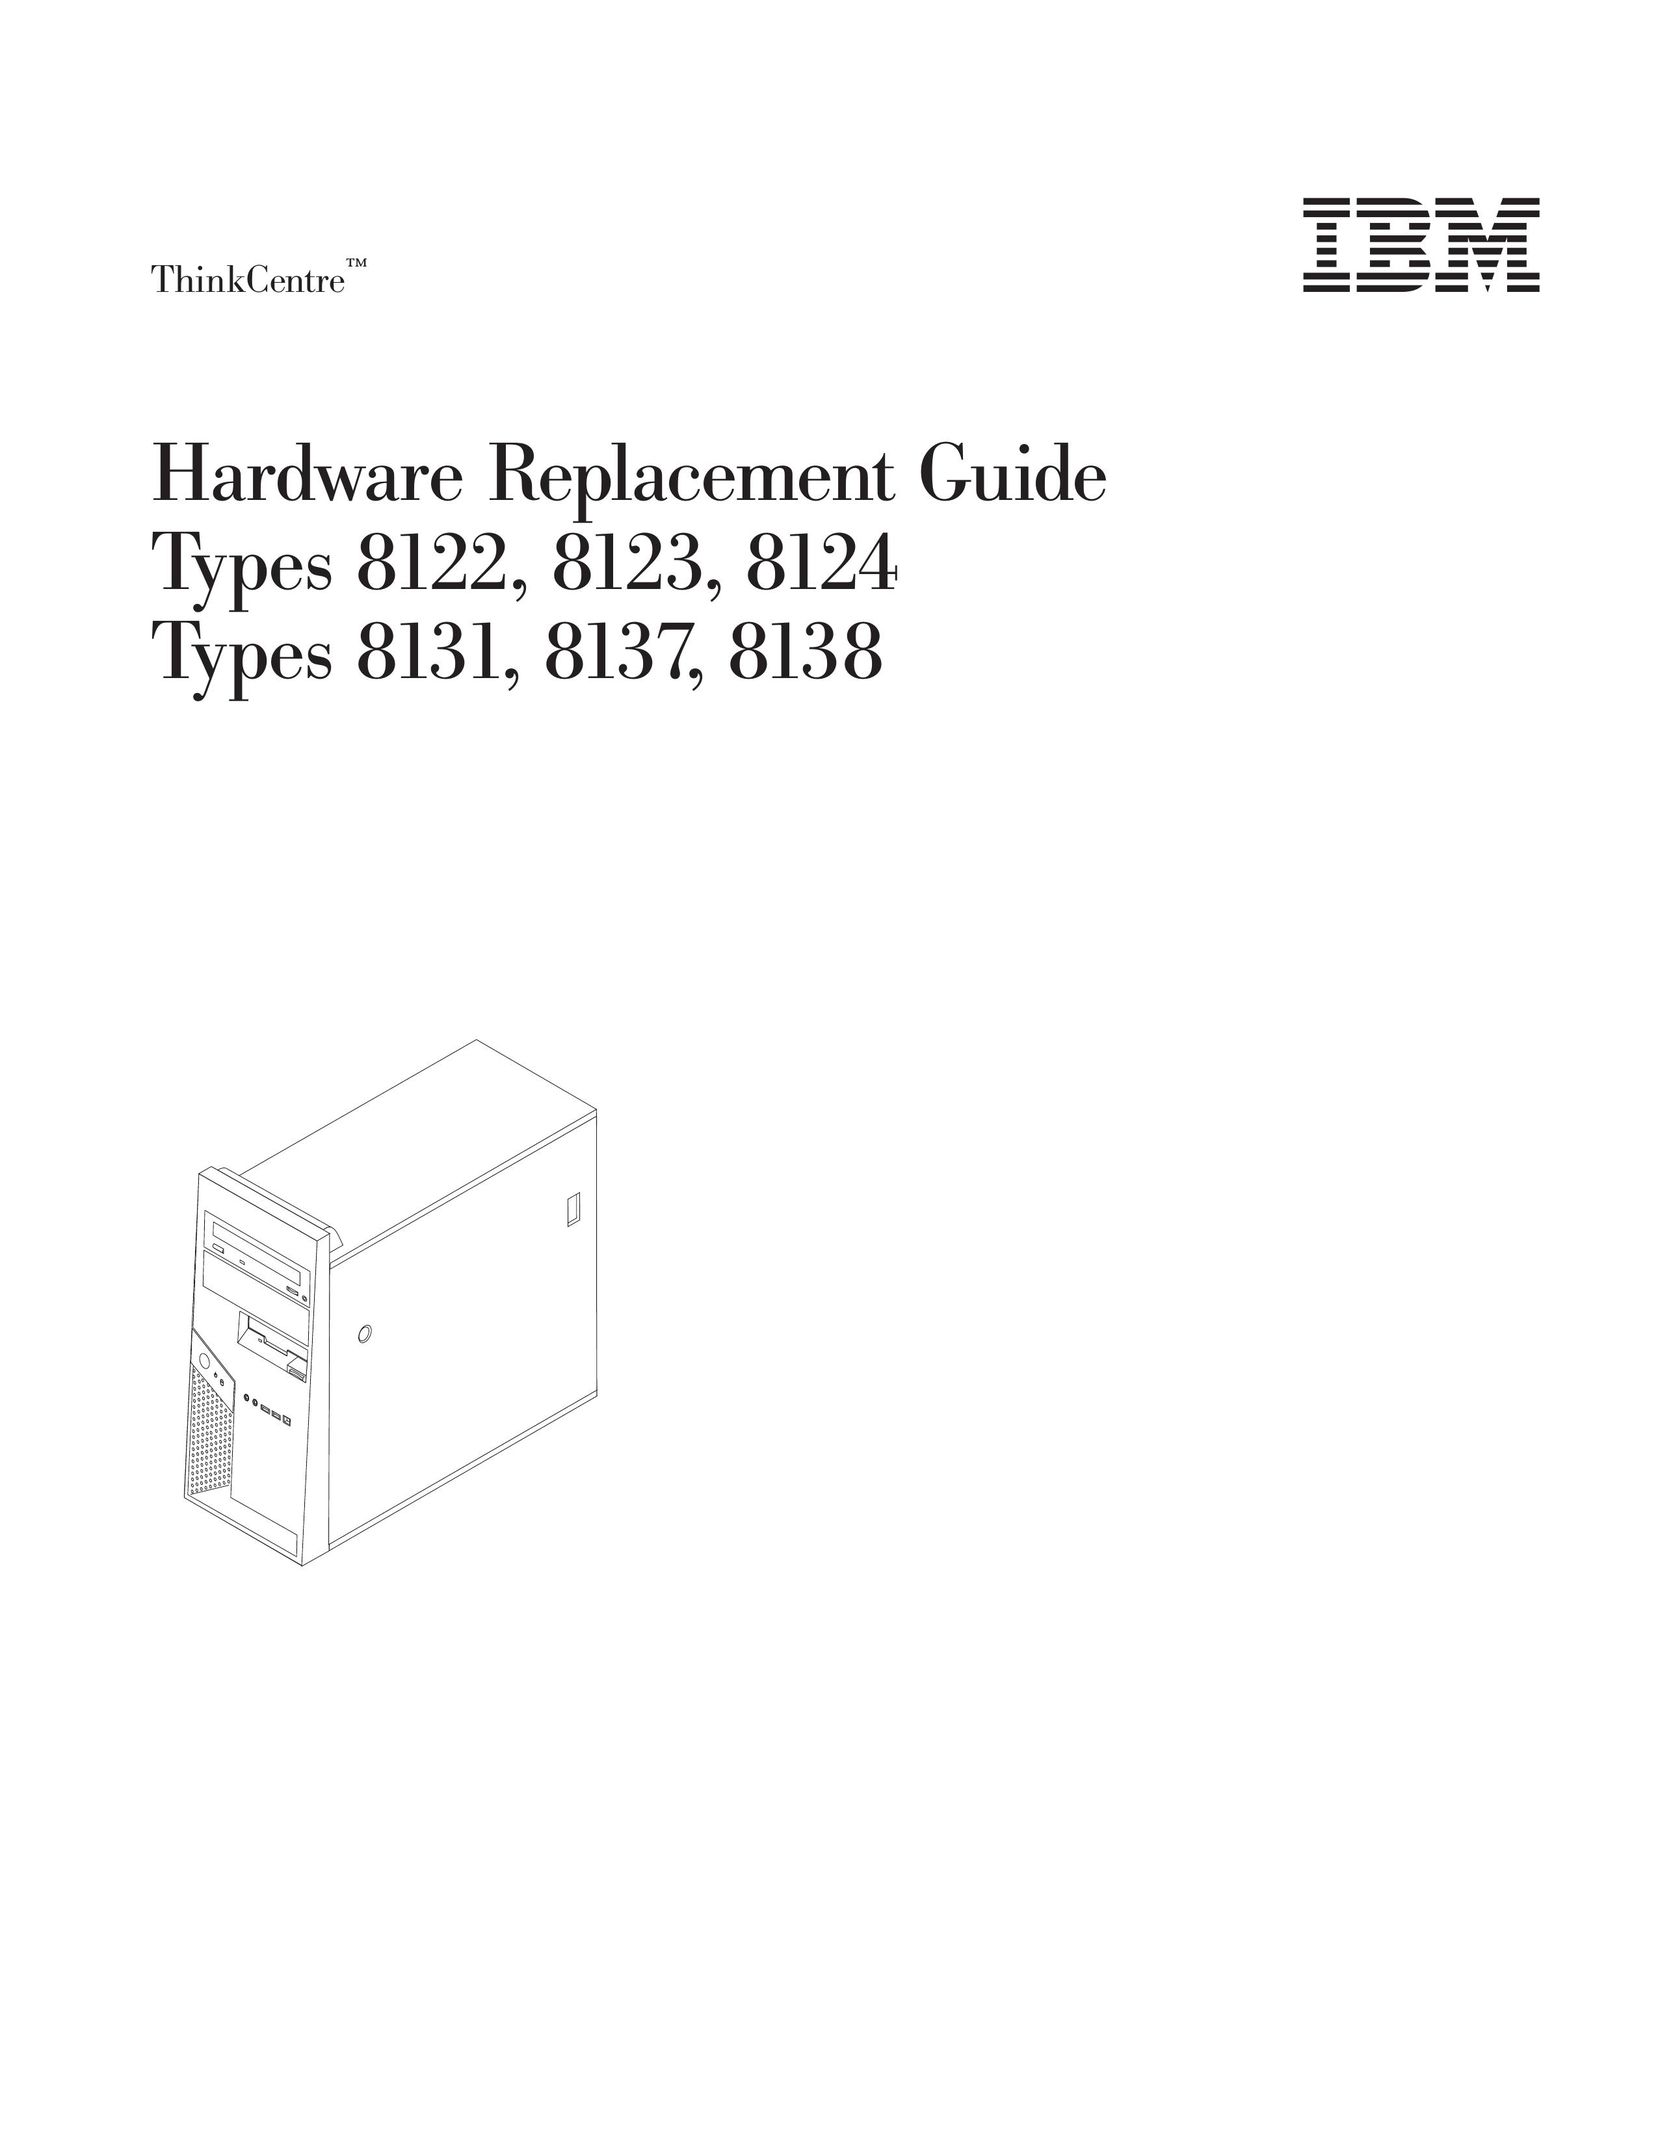 IBM 8137 Computer Hardware User Manual